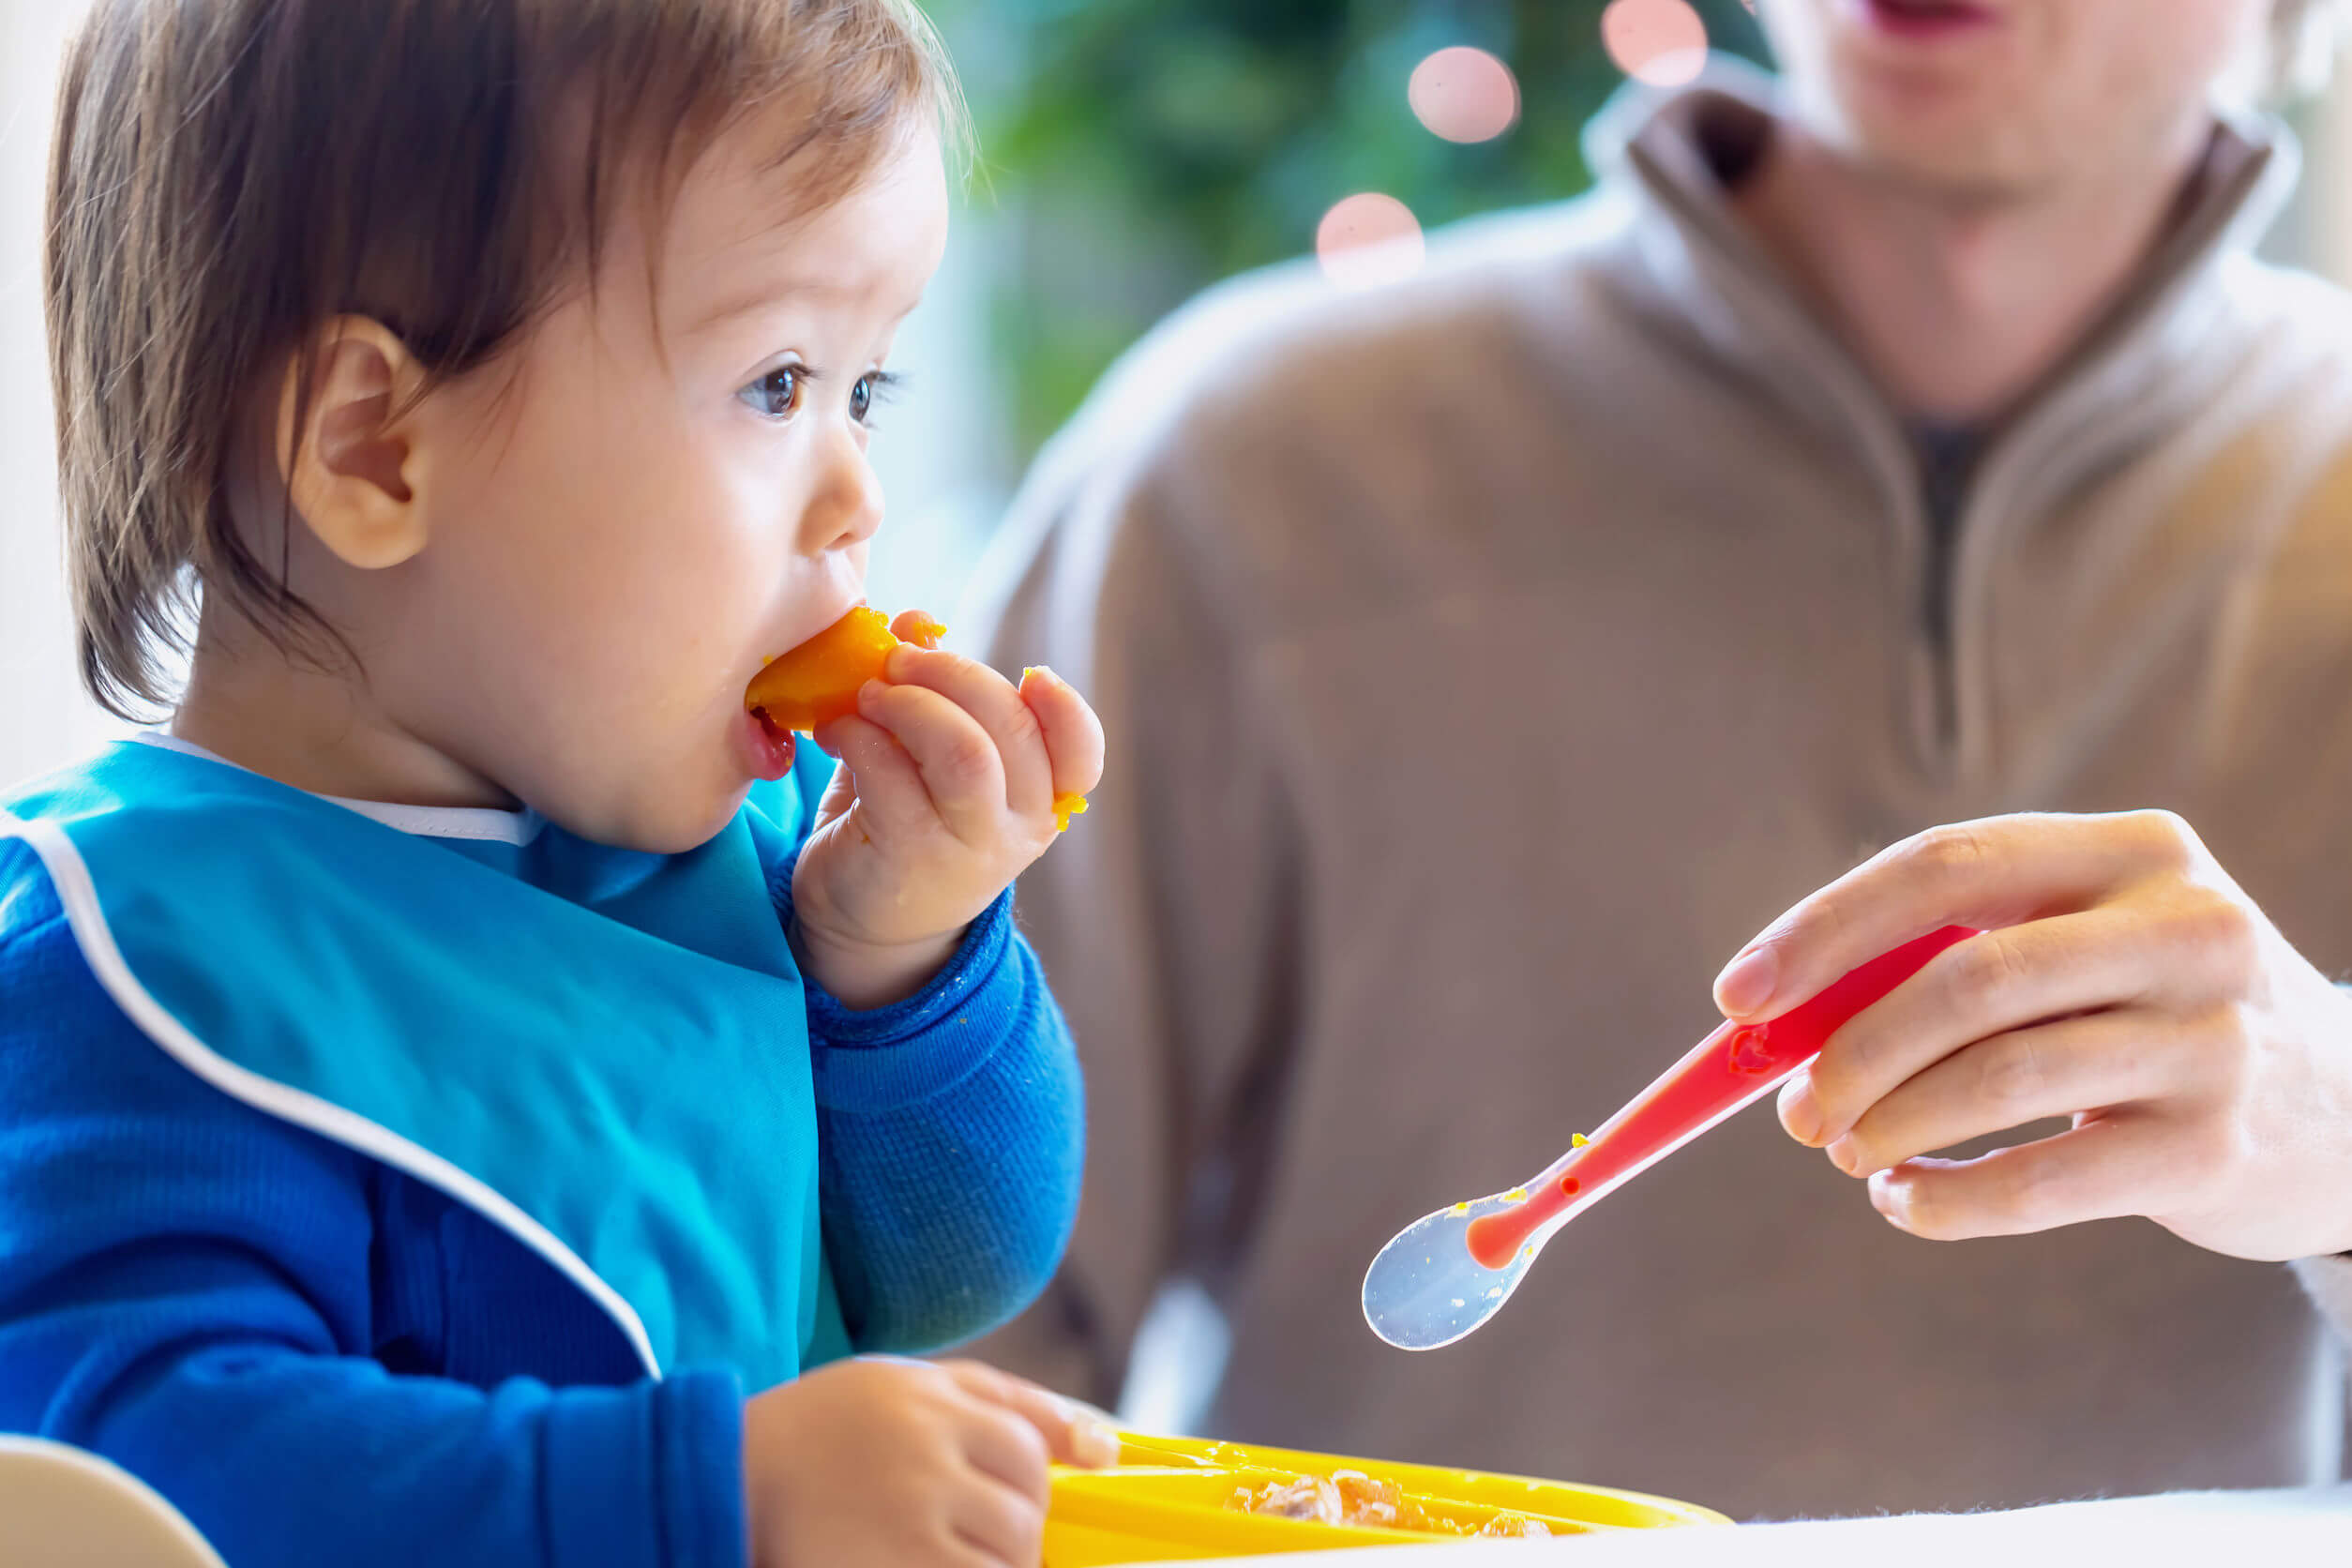 Bambino che mangia frutta mentre impara a masticare.